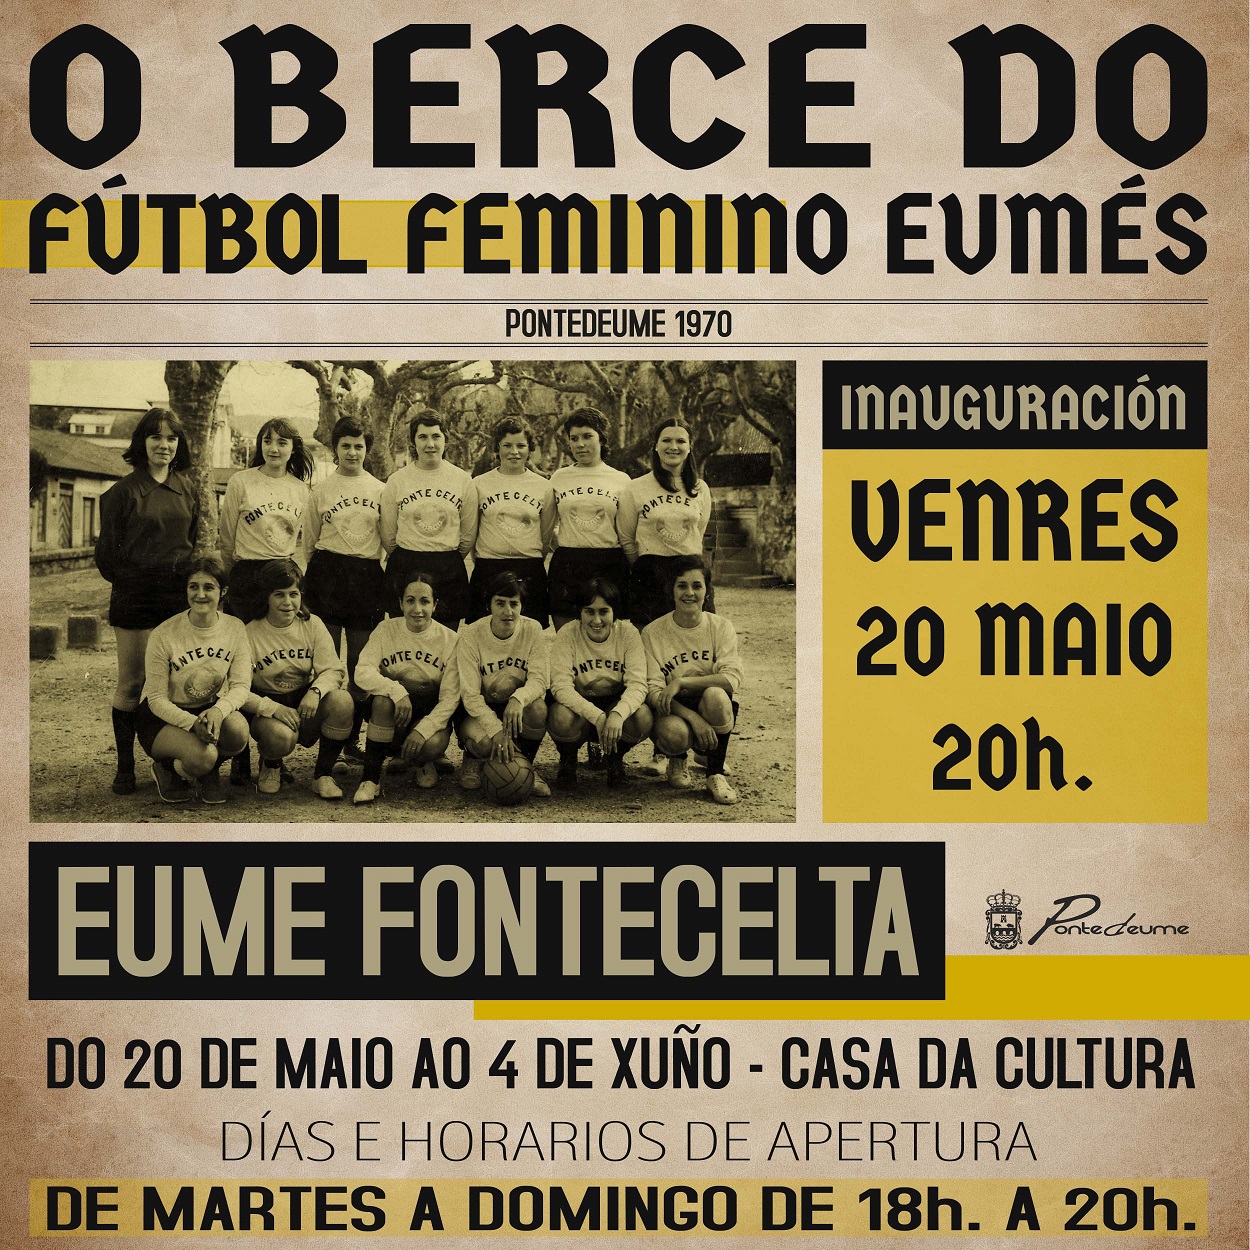 Futbol feminino eumes_1970_600px_def